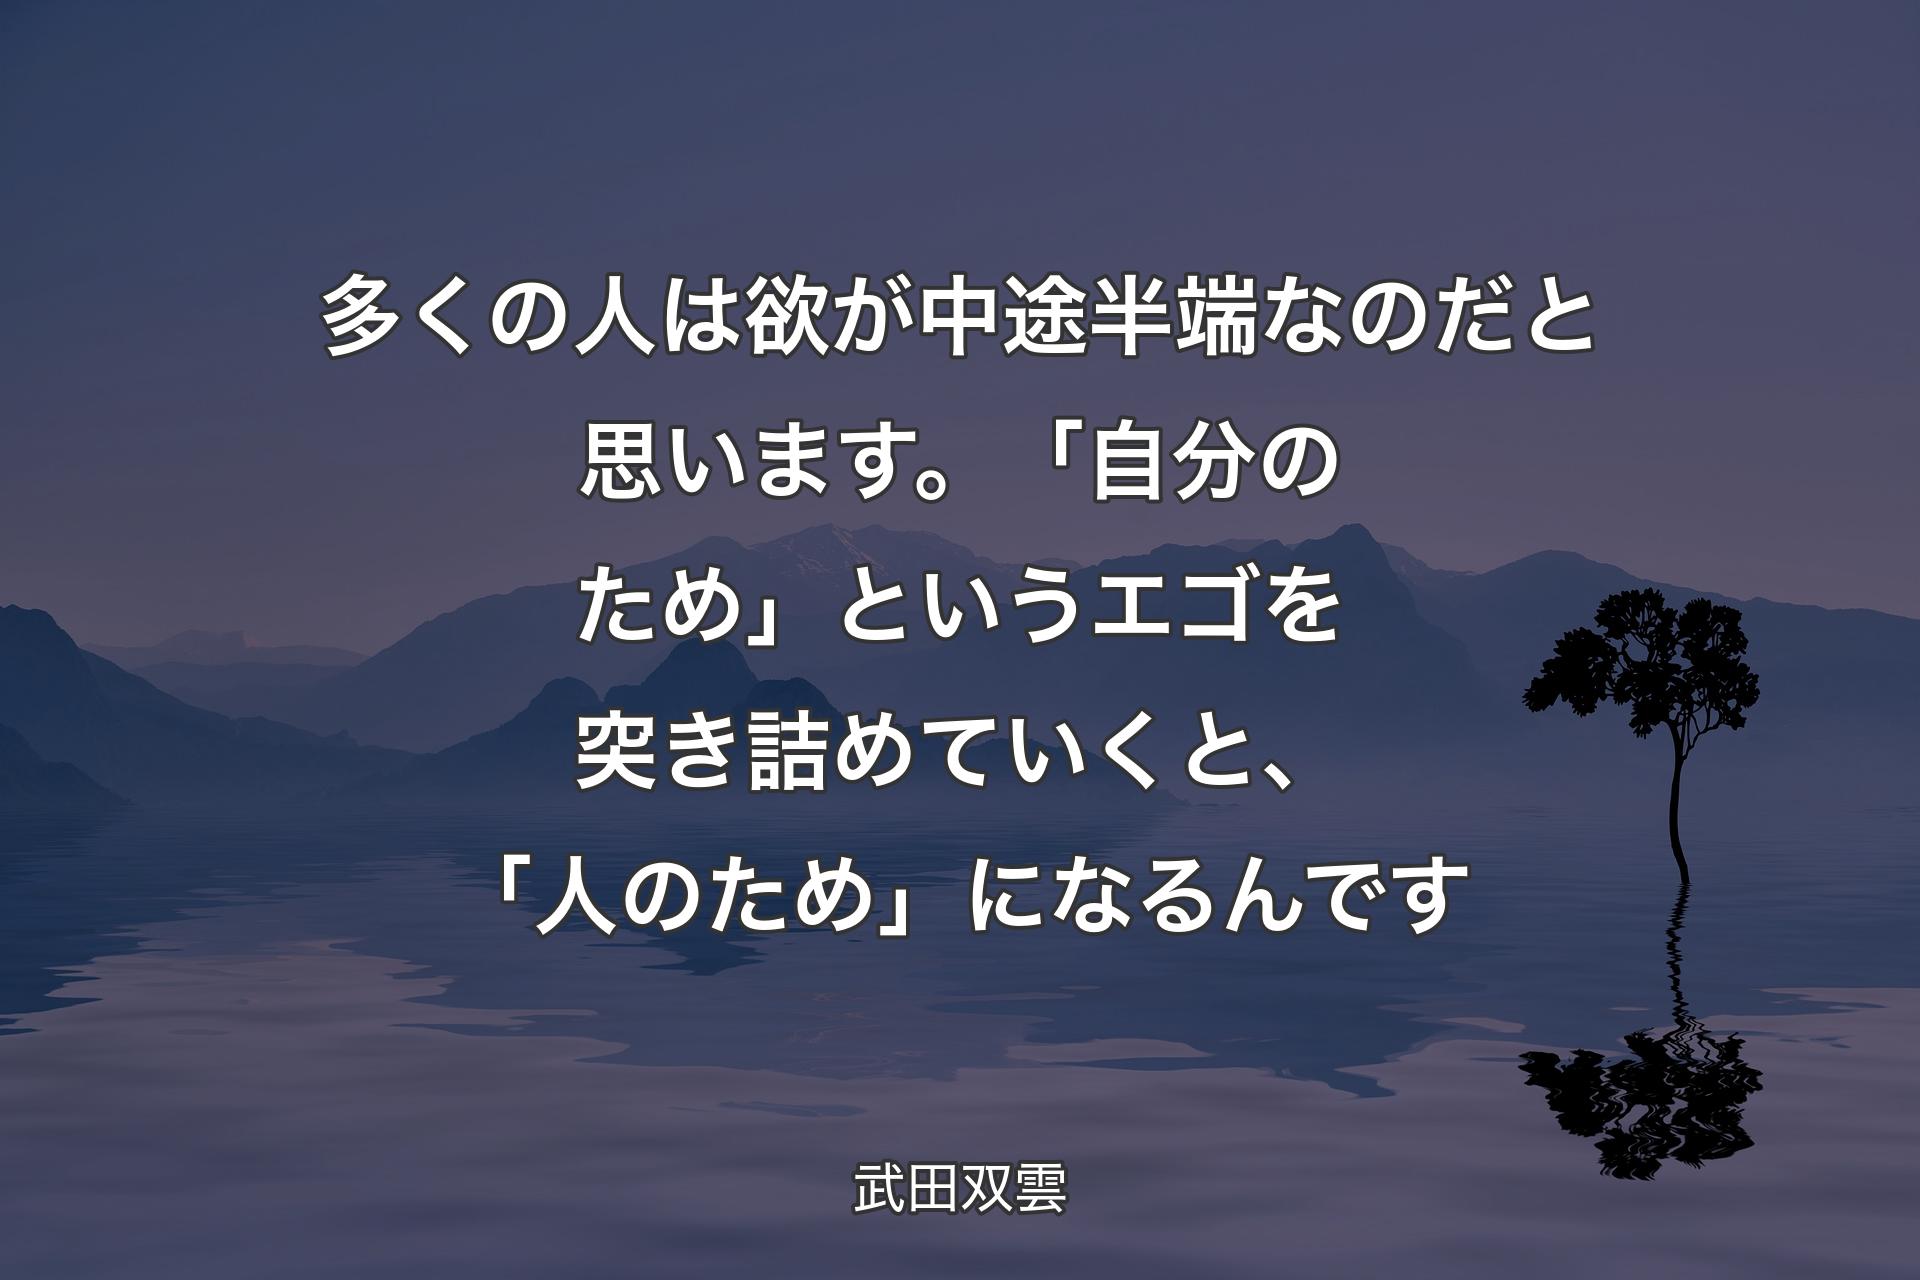 【背景4】多くの人は欲が中途半端なのだと思います。「自分のため」というエゴを突き詰めていくと、「人のため」になるんです - 武田双雲